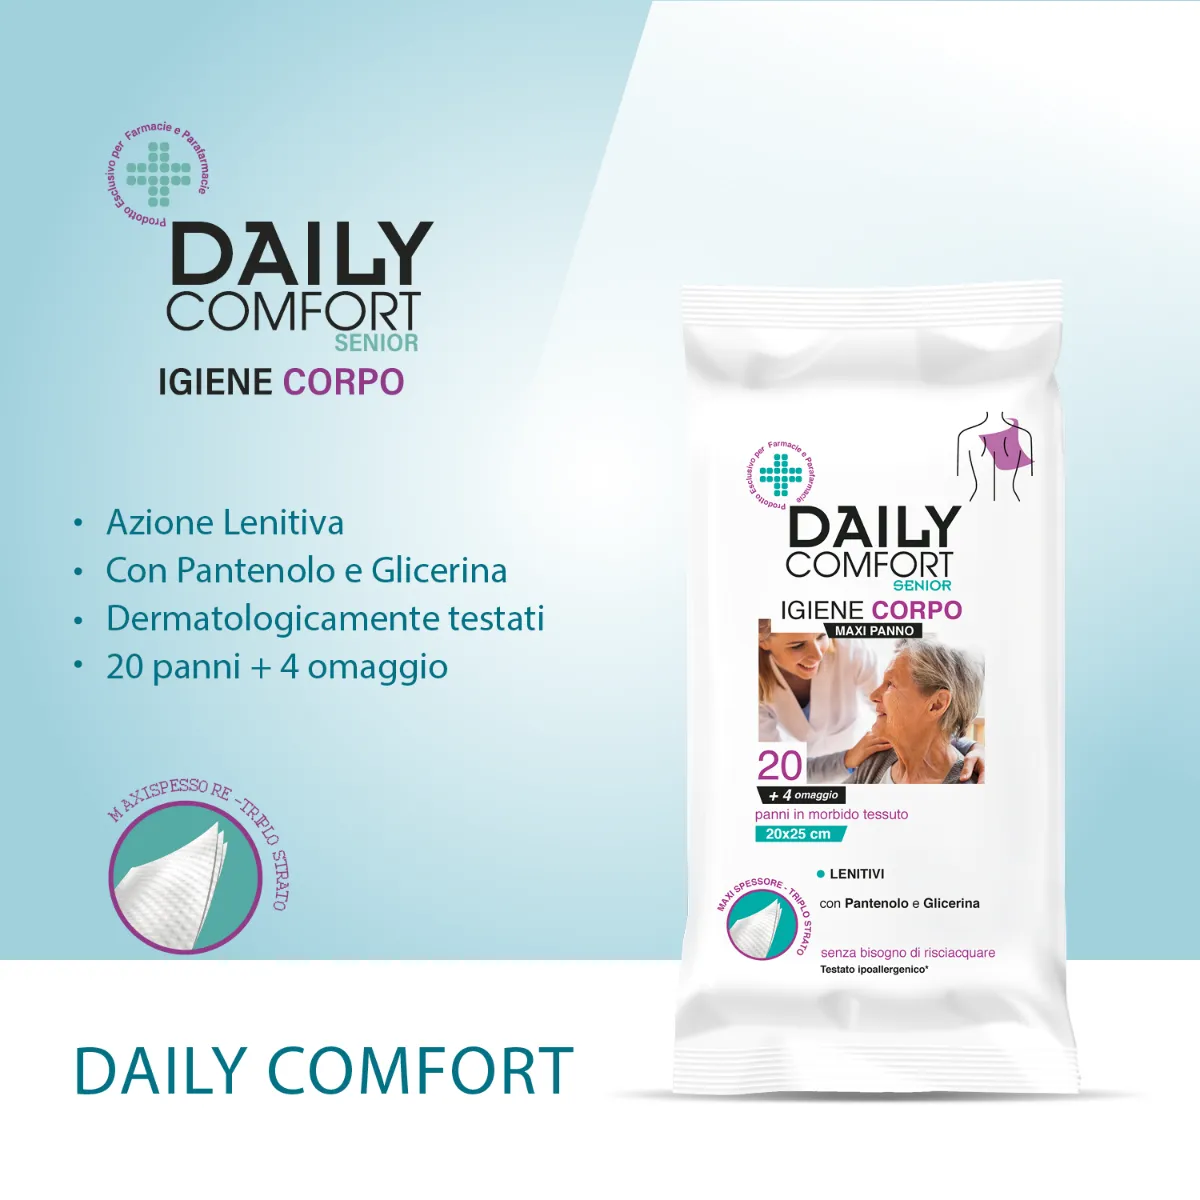 Daily Comfort Senior Panni Igiene Corpo 20 Pezzi Azione Igienizzante